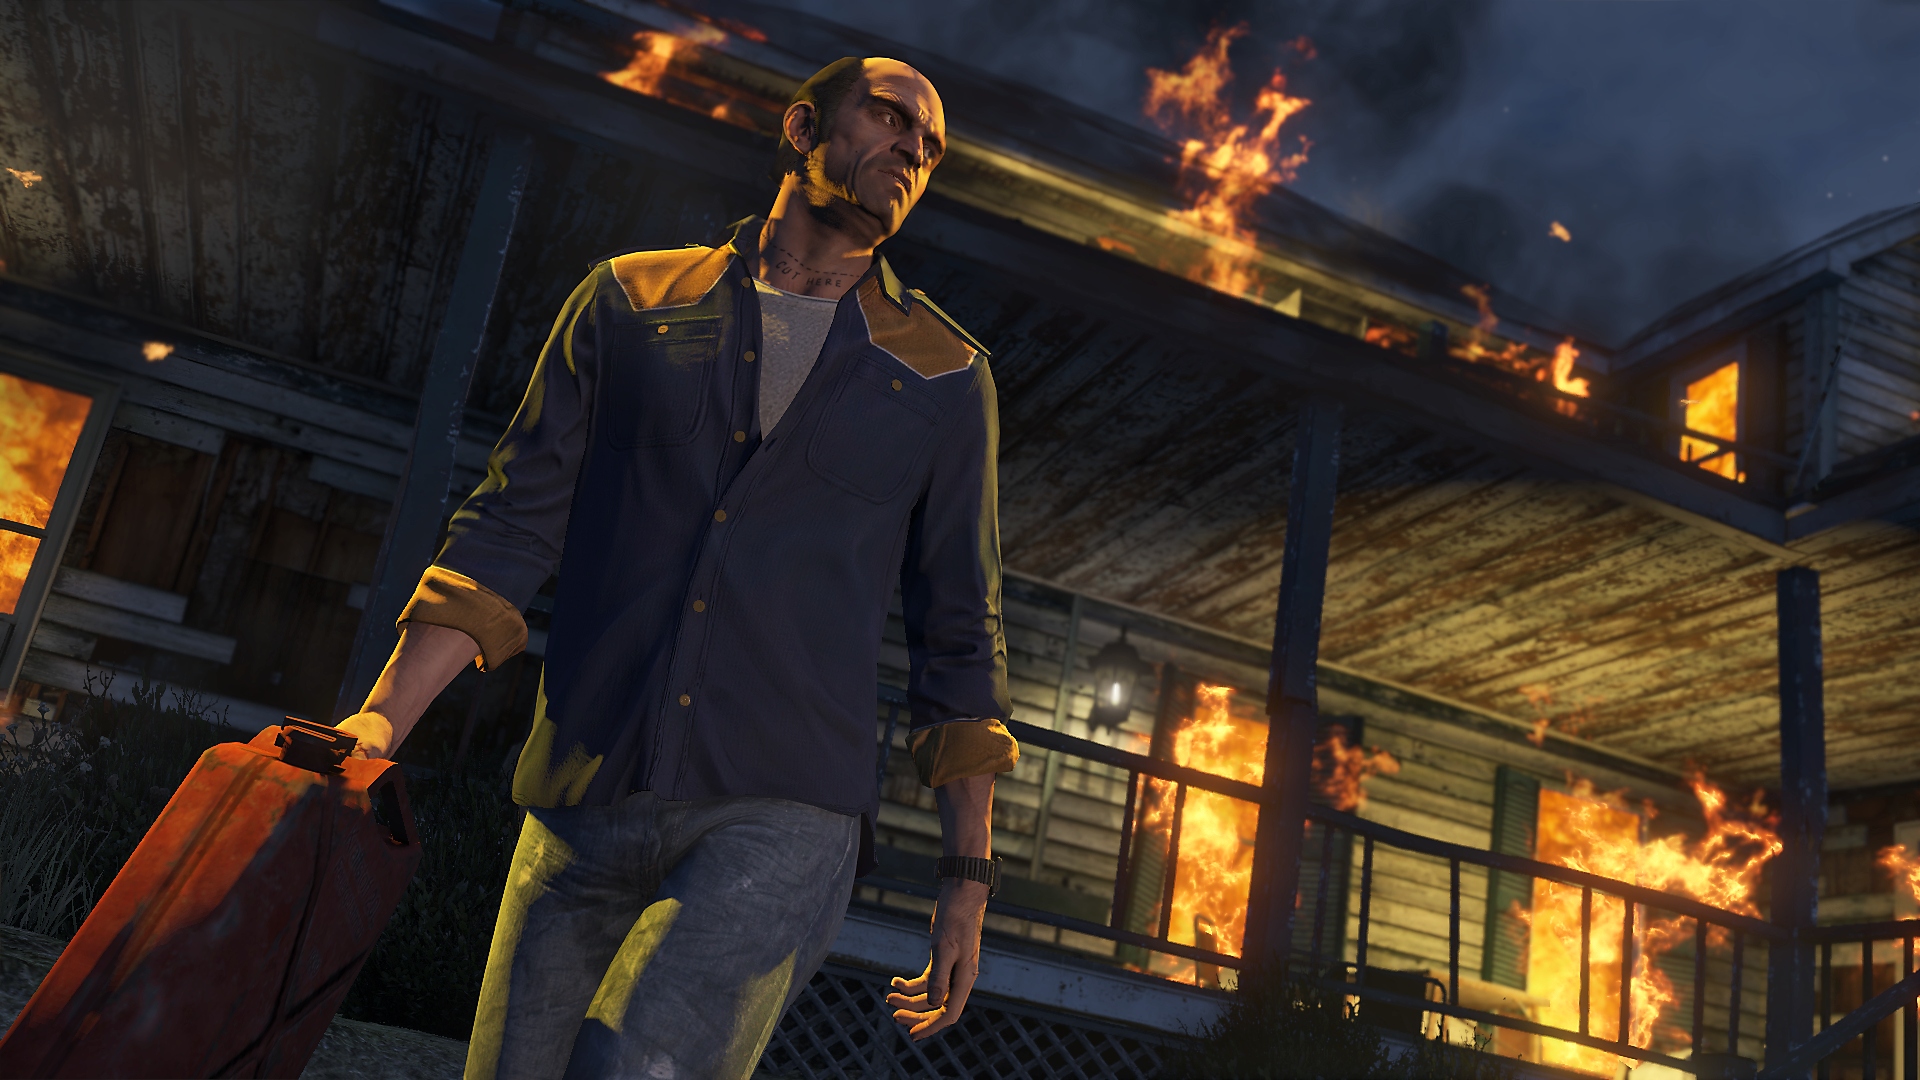 Grand Theft Auto V – snímek obrazovky, na kterém hlavní postava Trevor s kanystrem benzínu v ruce odchází od hořící budovy